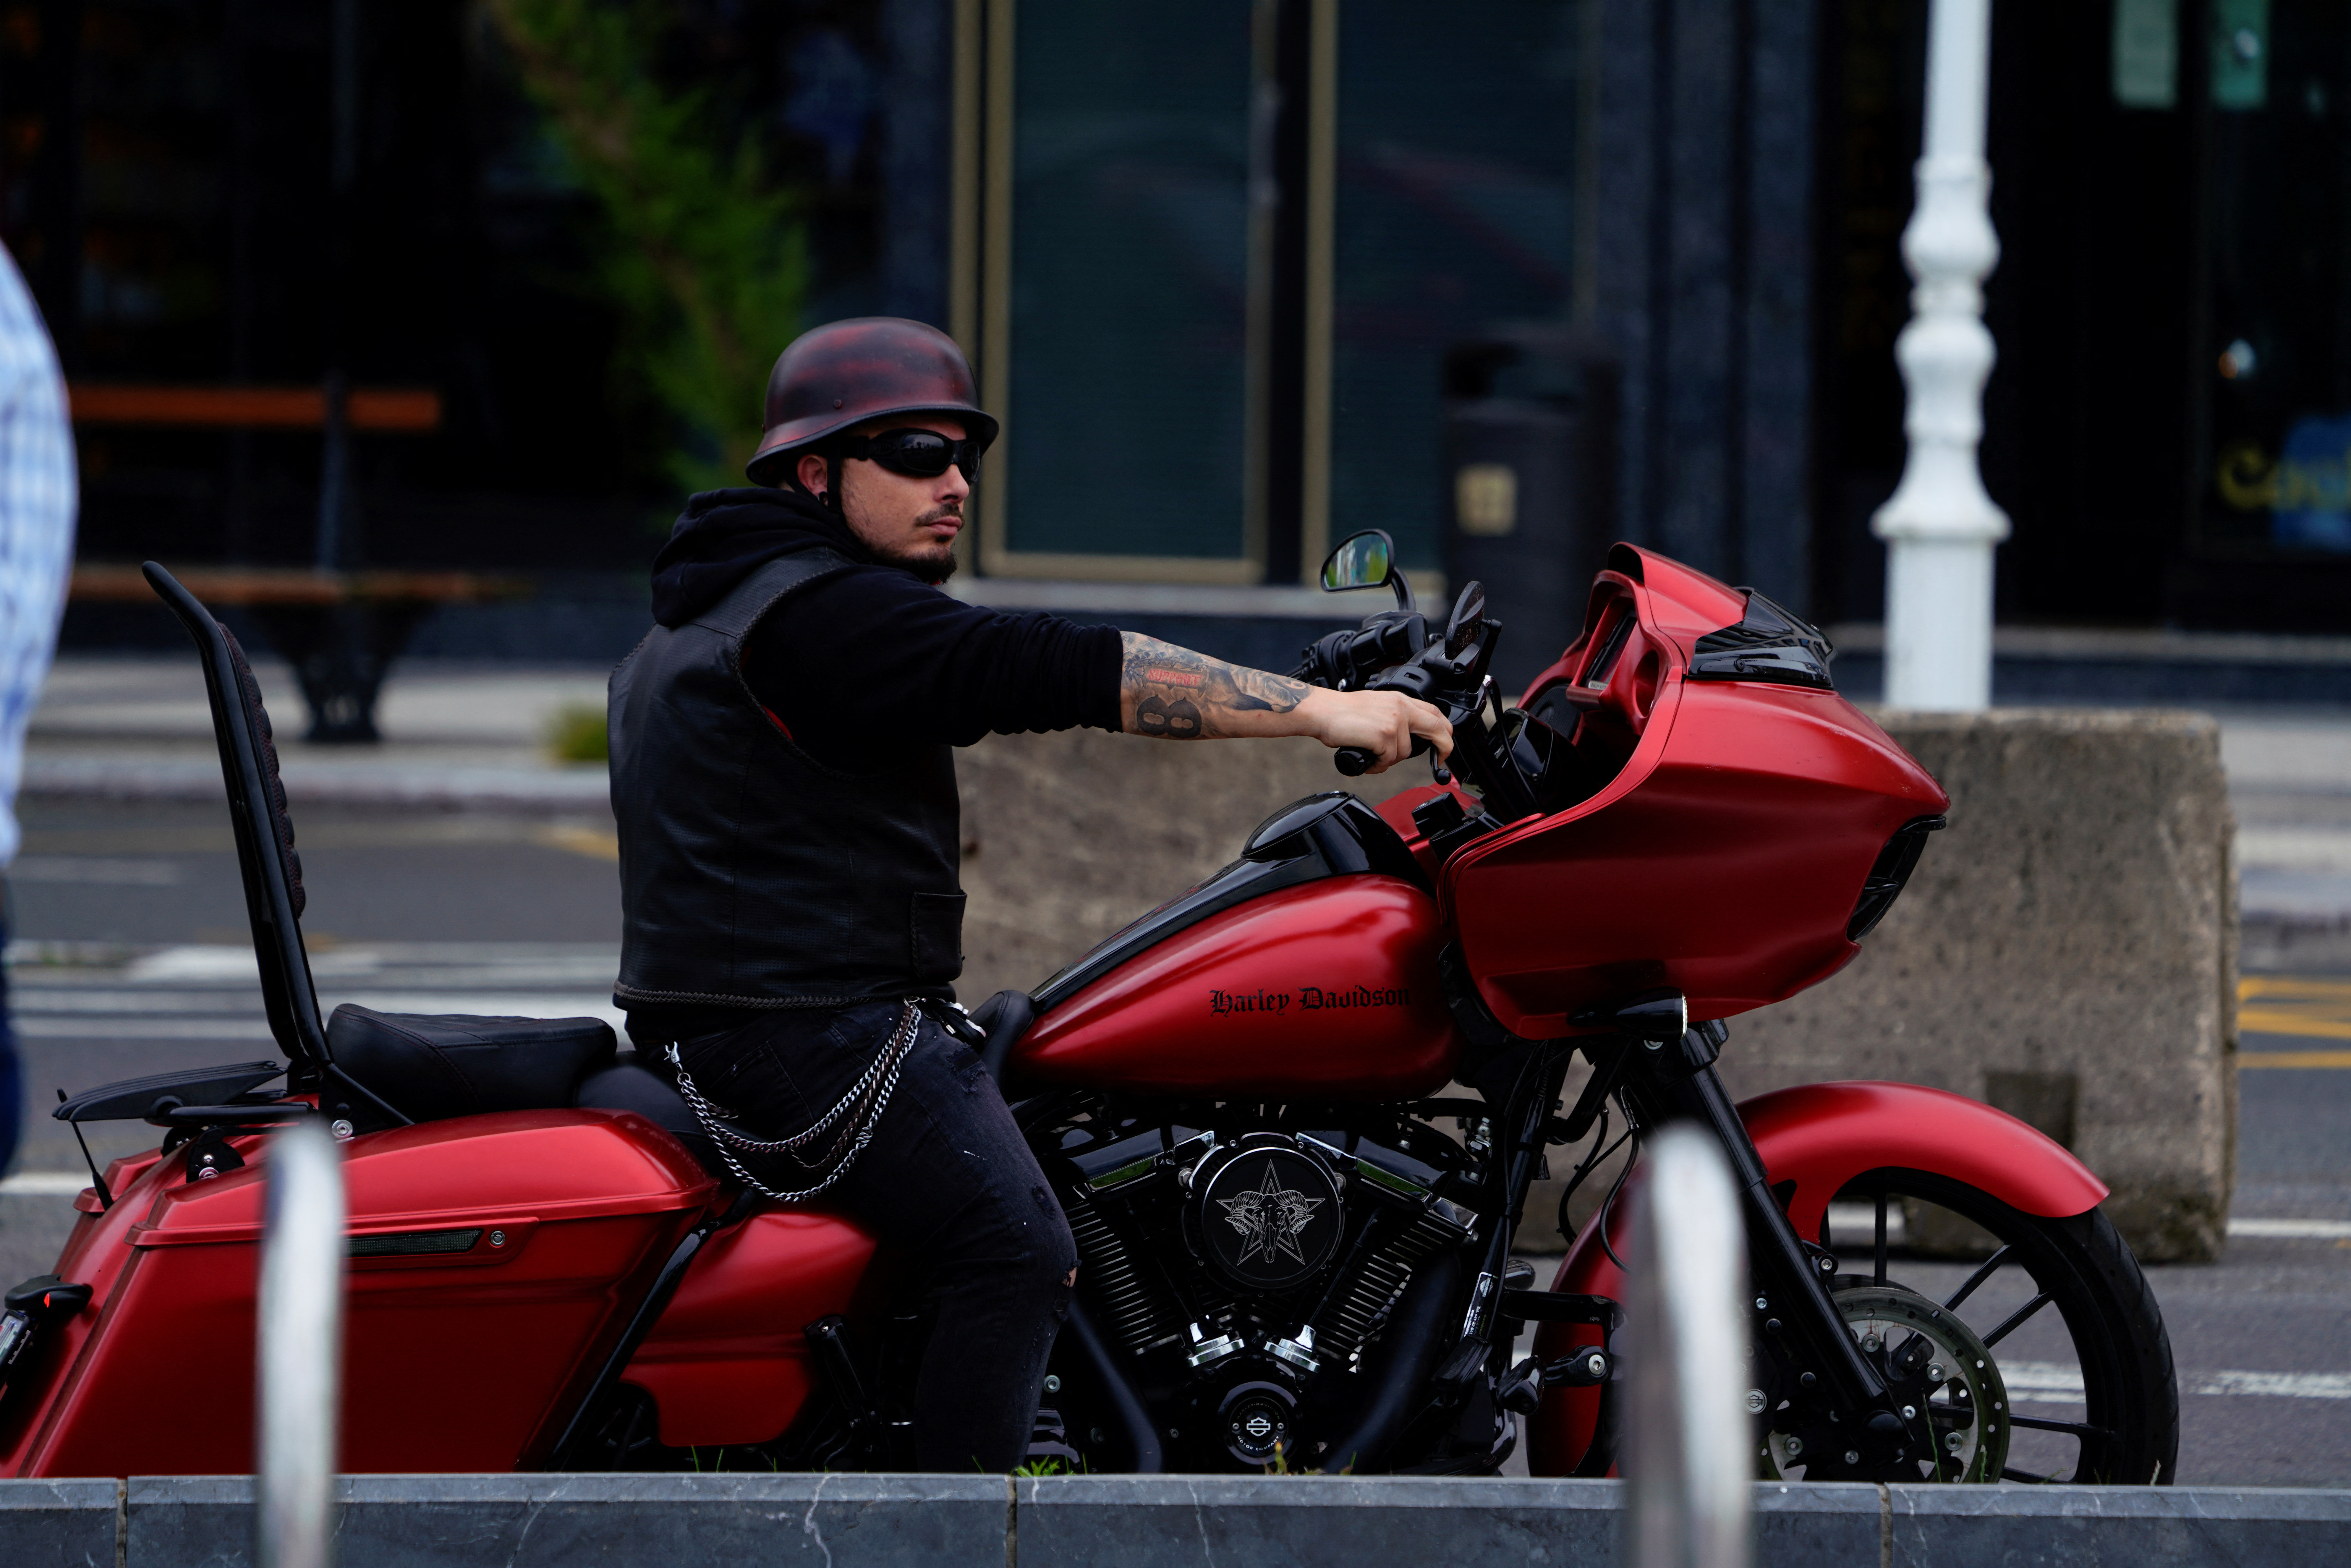 Harley-Davidson spins off LiveWire in $1.8 billion SPAC merger